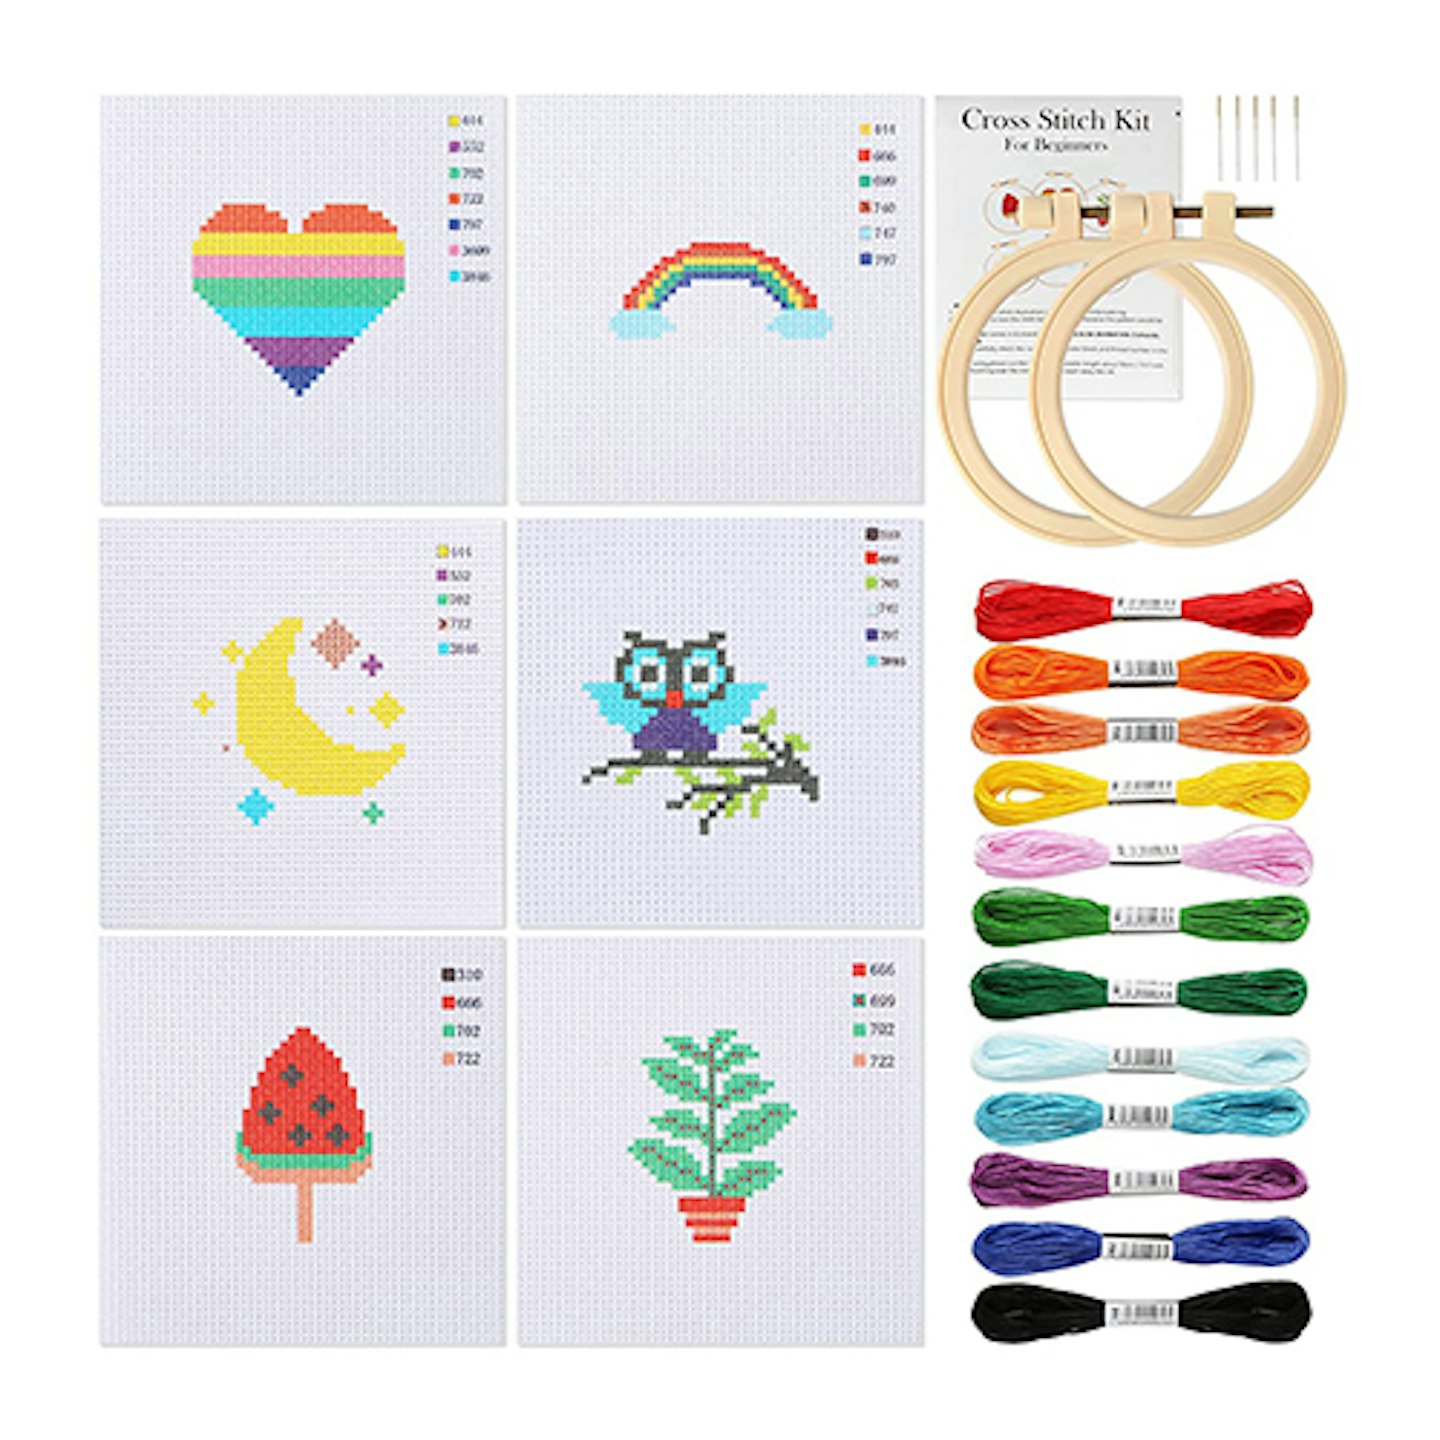 Pllieay Cross Stitch Beginner Kit for Kids